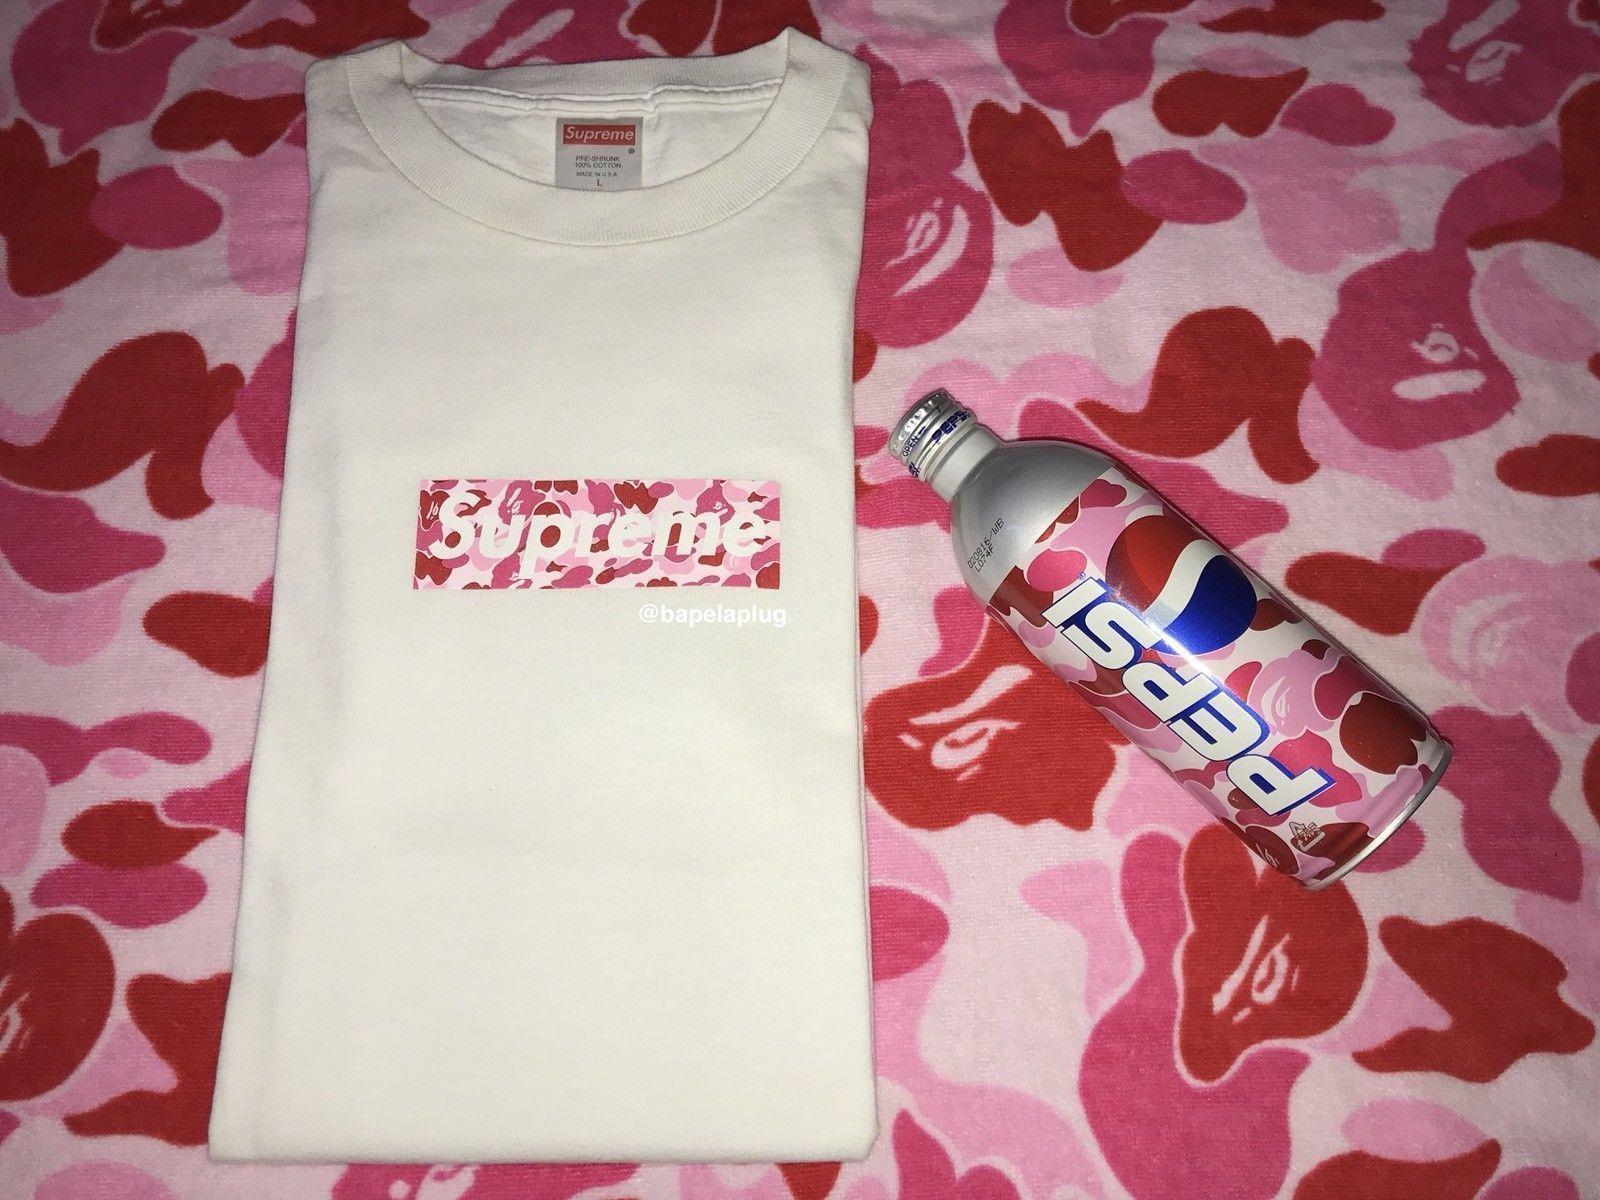 Bape Camo Supreme Box Logo - Details about SUPREME x BAPE Pink ABC Camo Box Logo T-shirt WHITE L ...